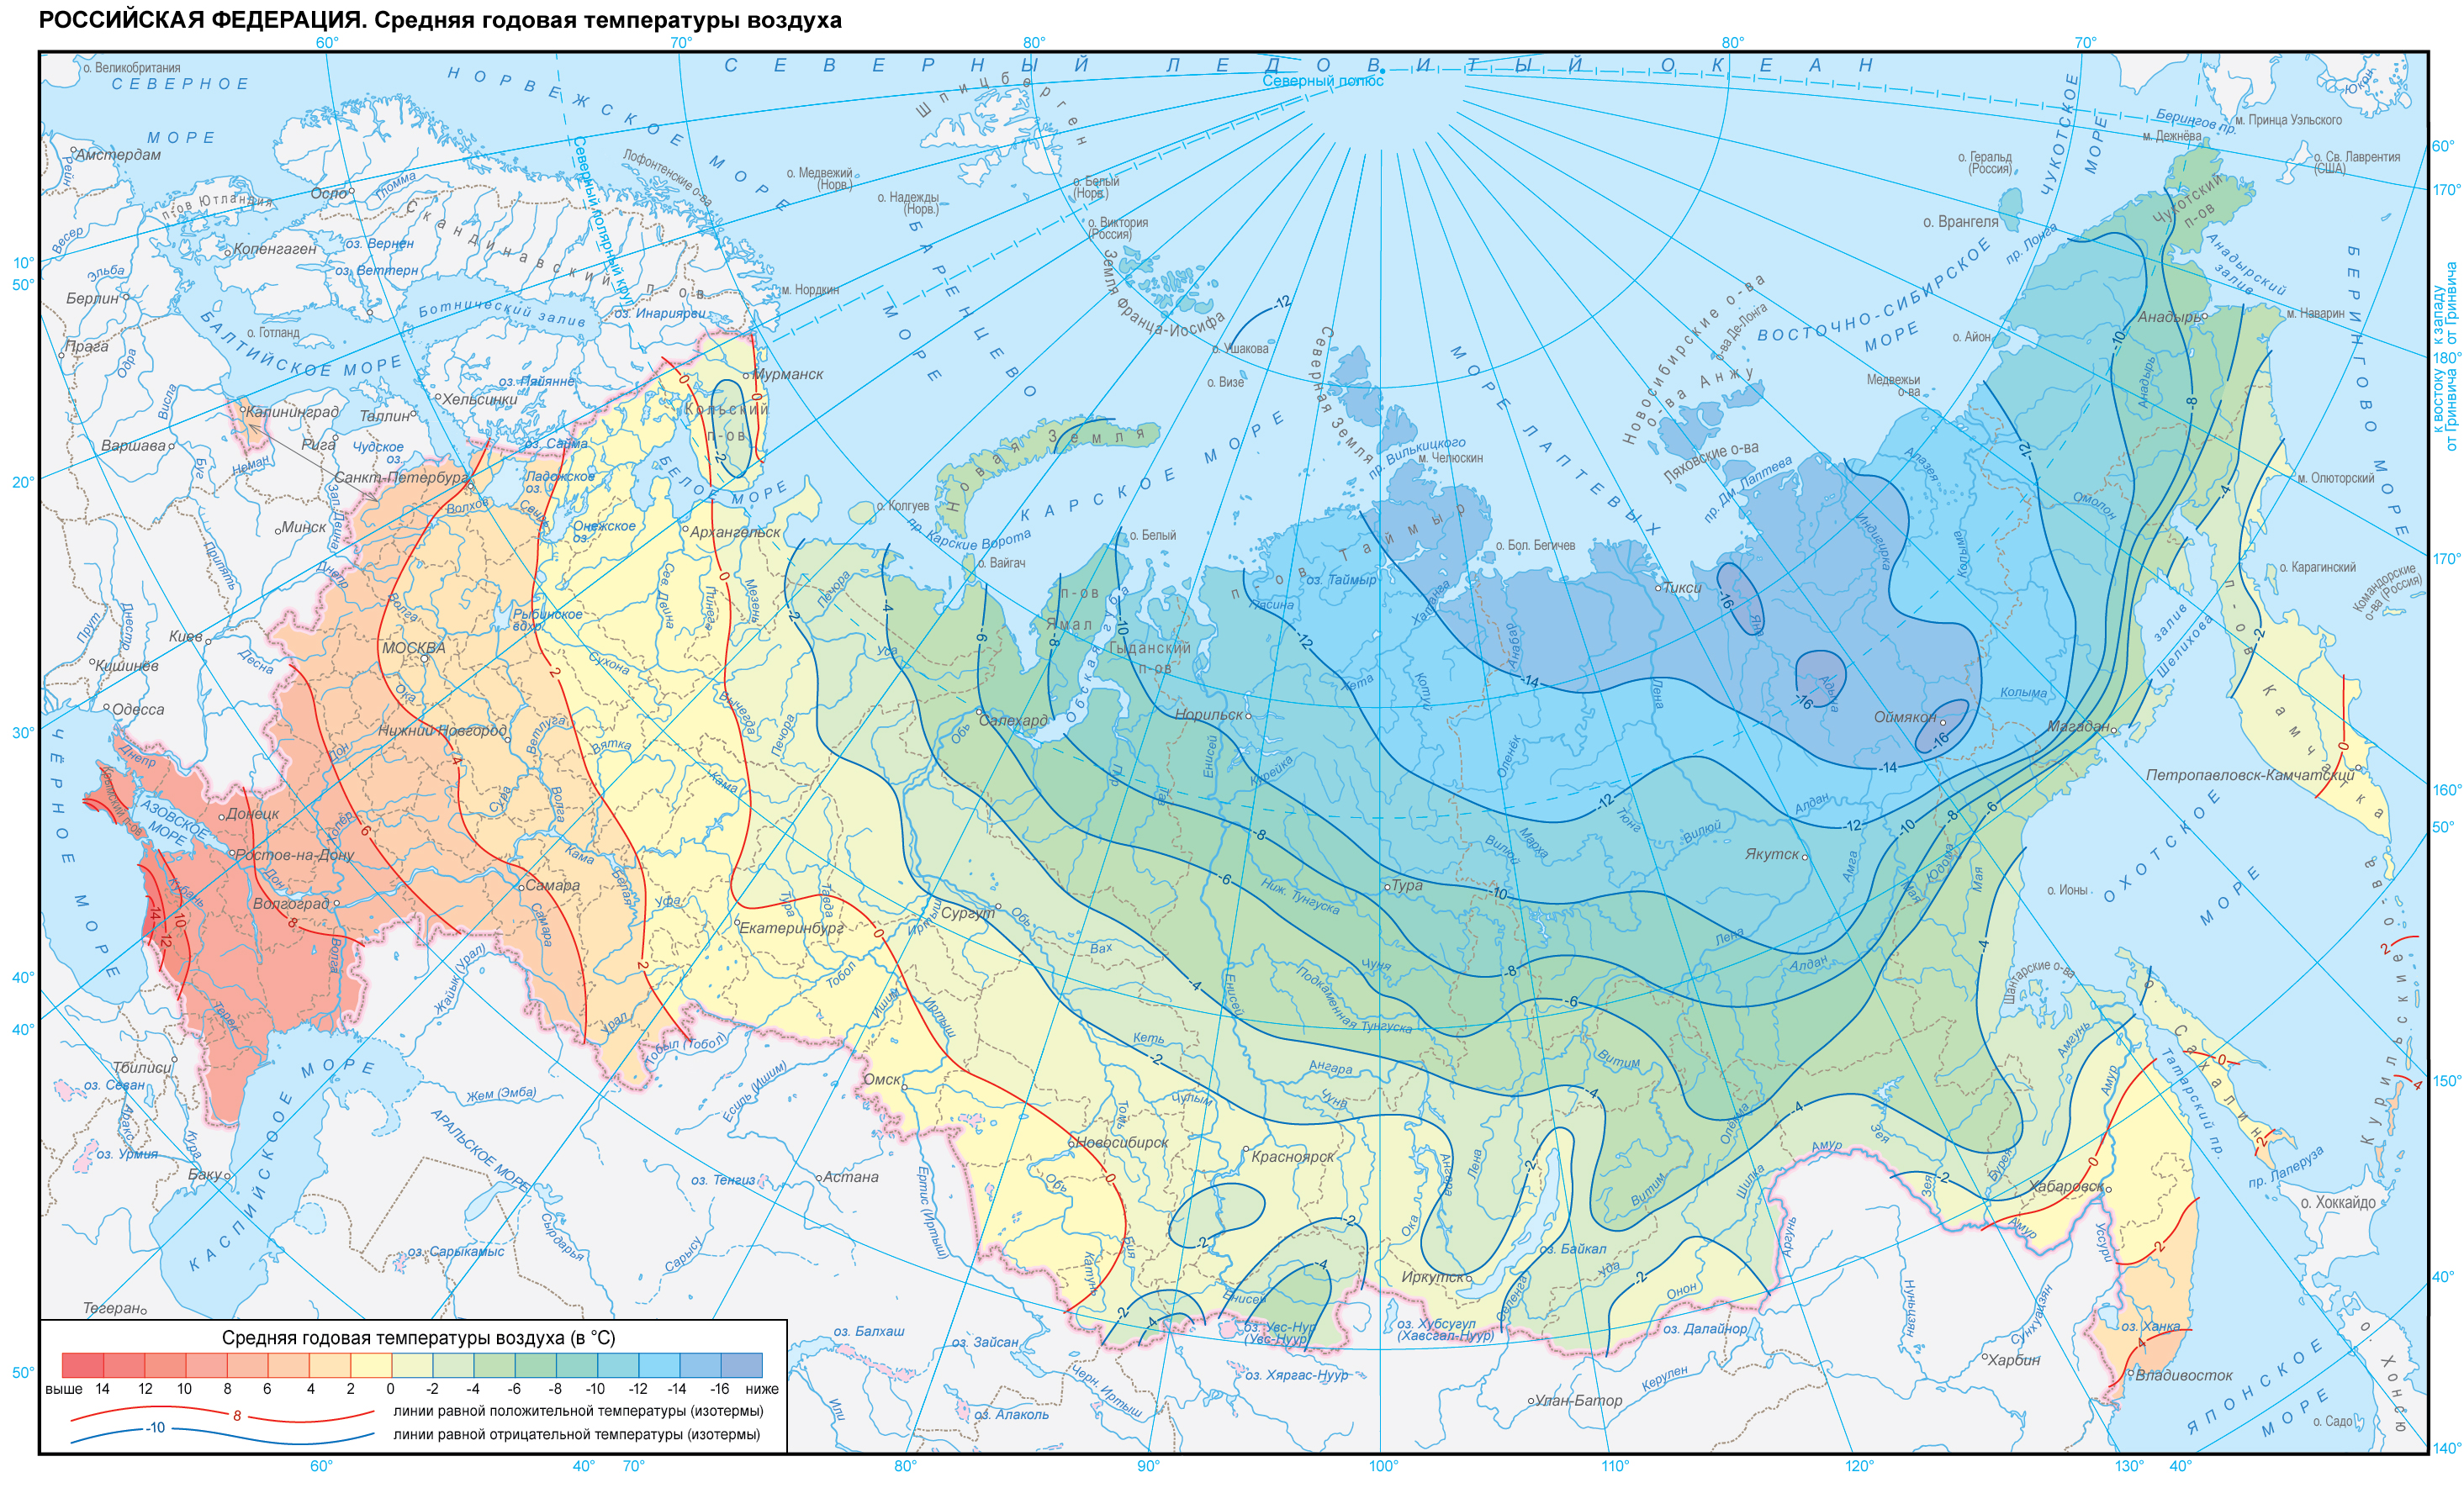 Температура в сызрани. Карта среднегодовых температур России. Карта температурных зон России. Карта России по среднегодовой температуре. Карта температуры воздуха.